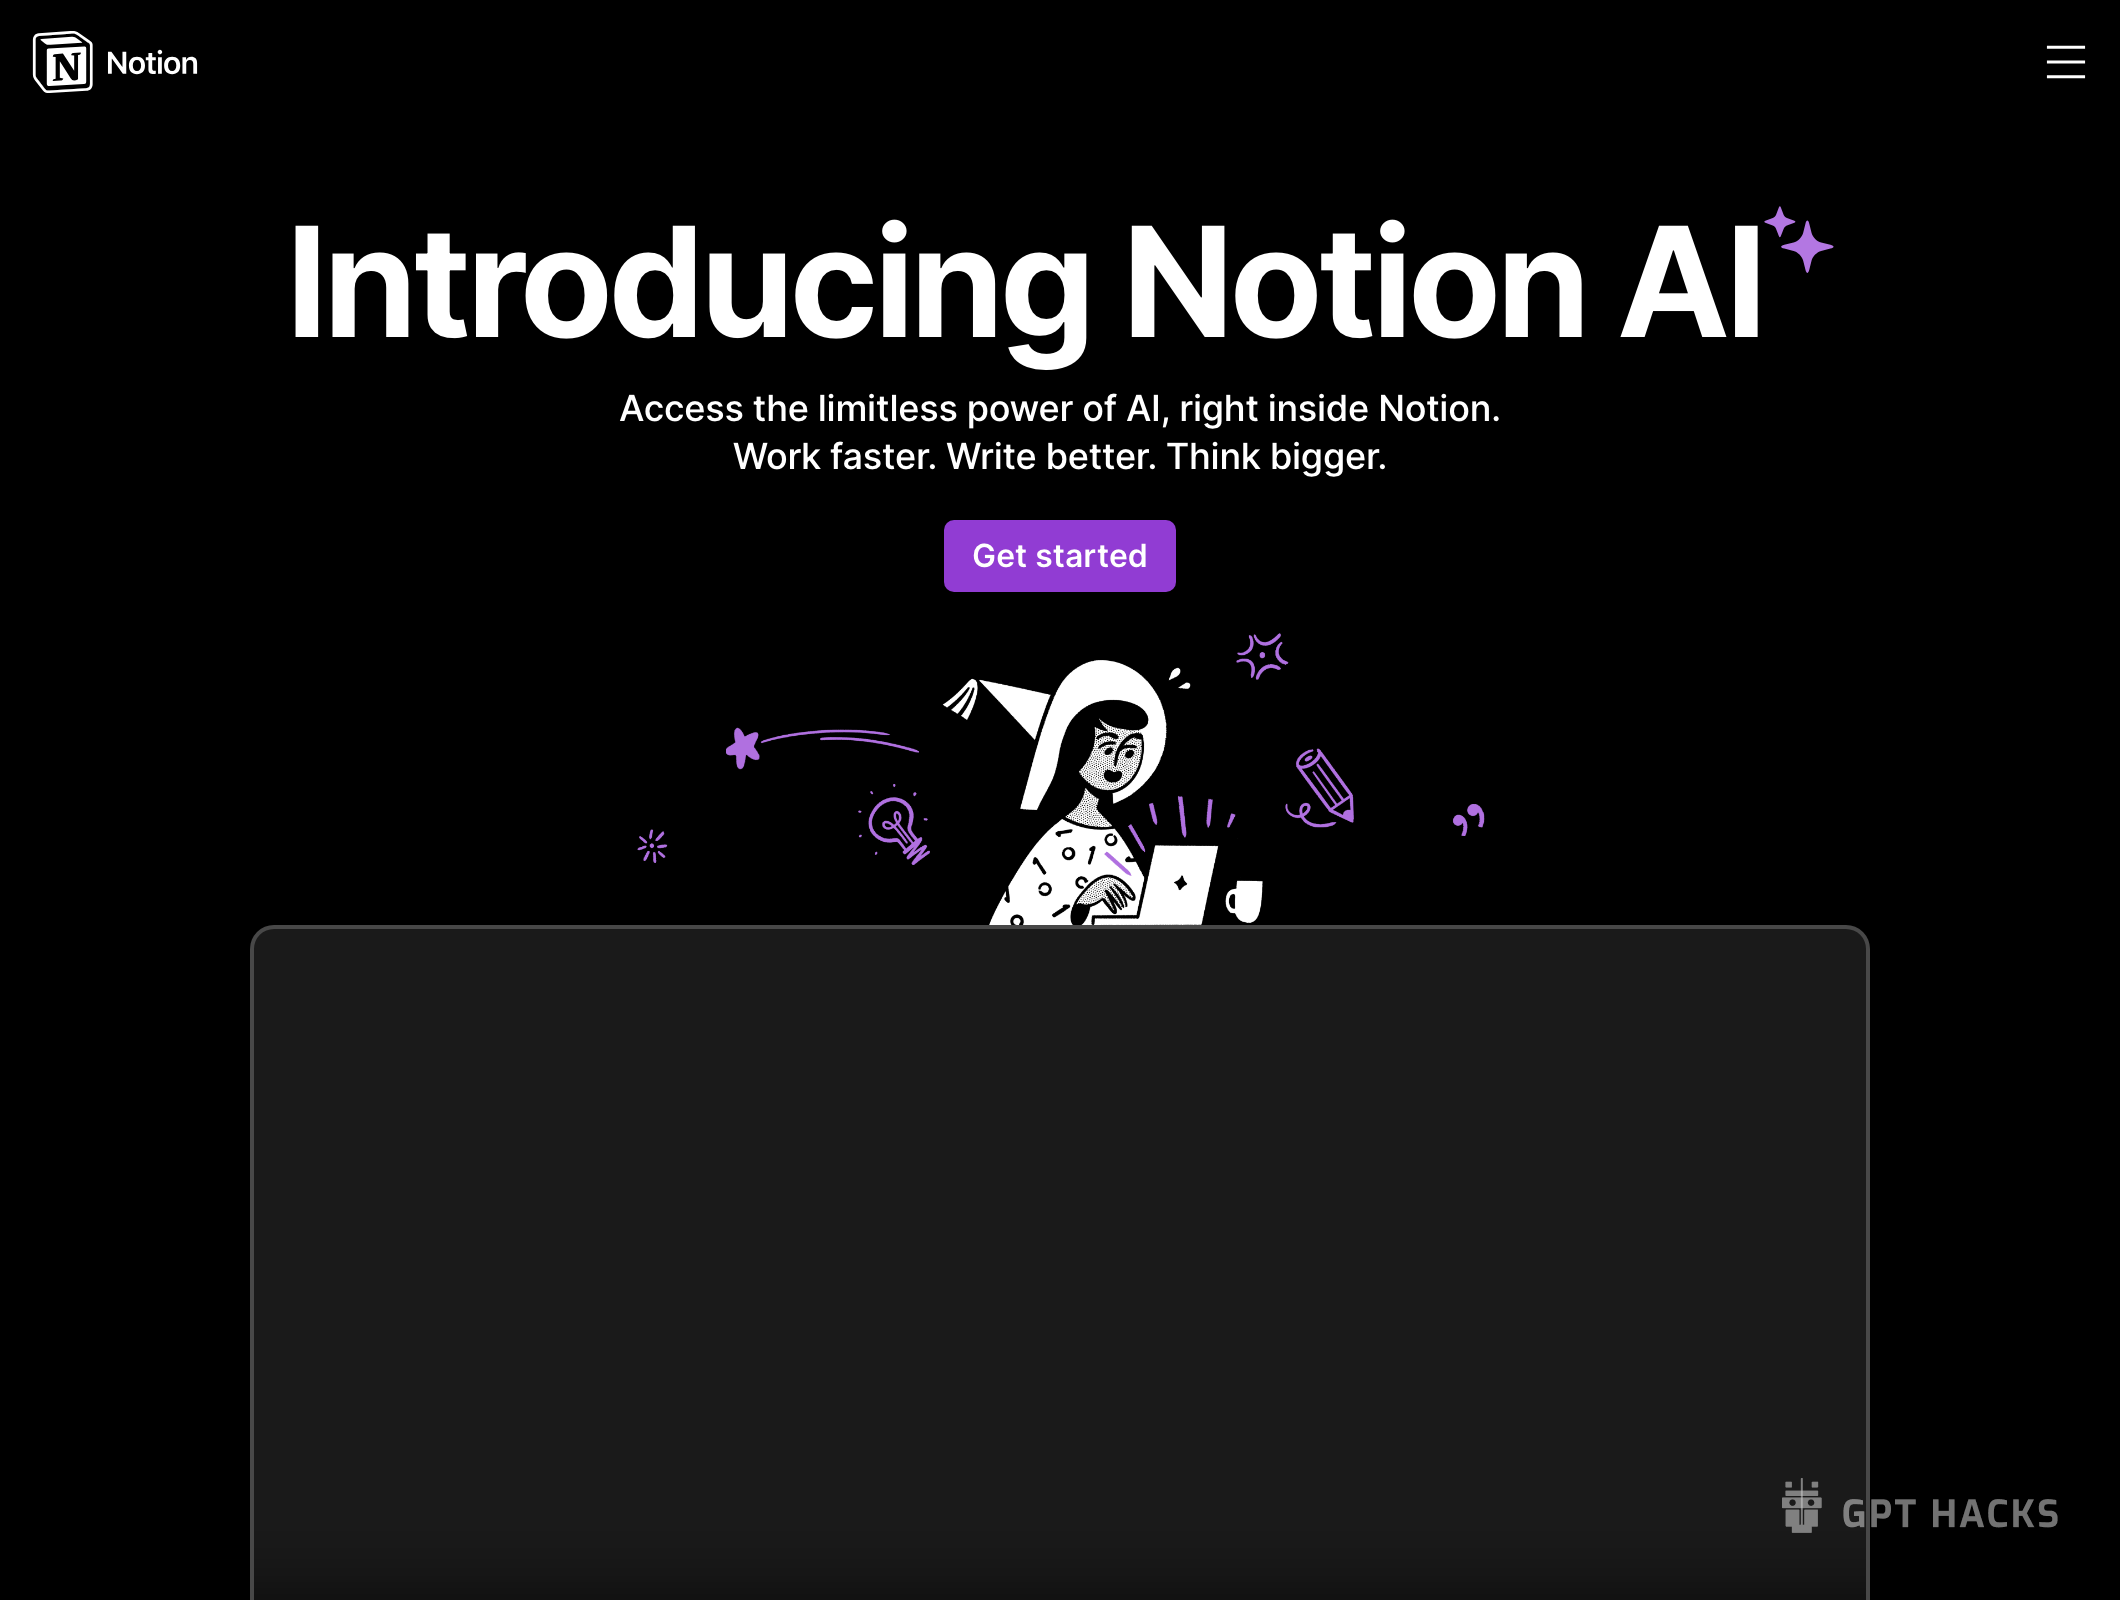 Notion AI